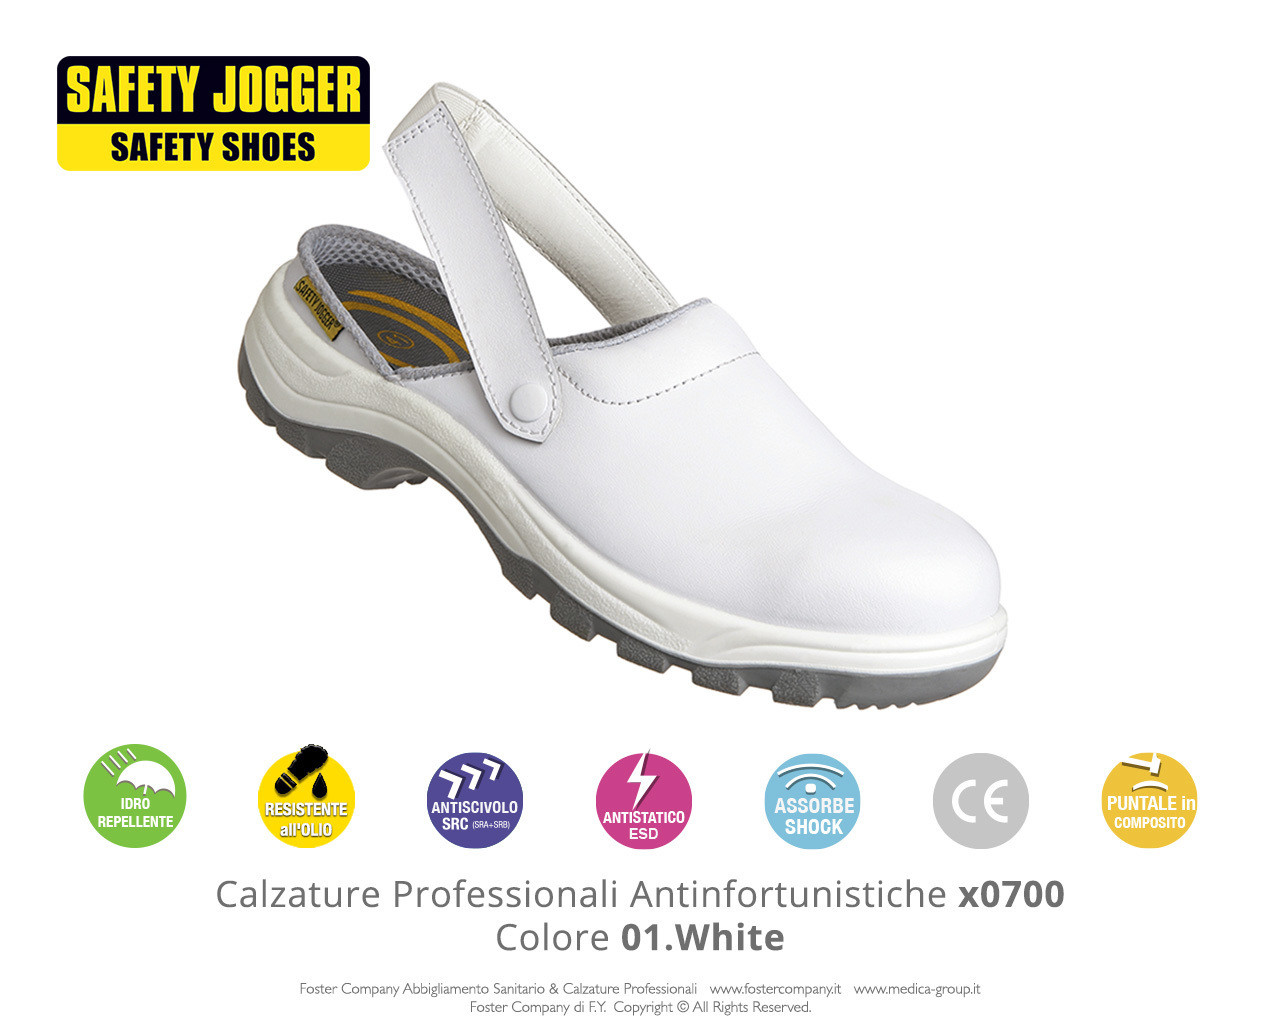 Zoccoli Professionali Antinfortunistici con Puntale di Protezione Safety Jogger X0700 Colore 01. White - FINE SERIE